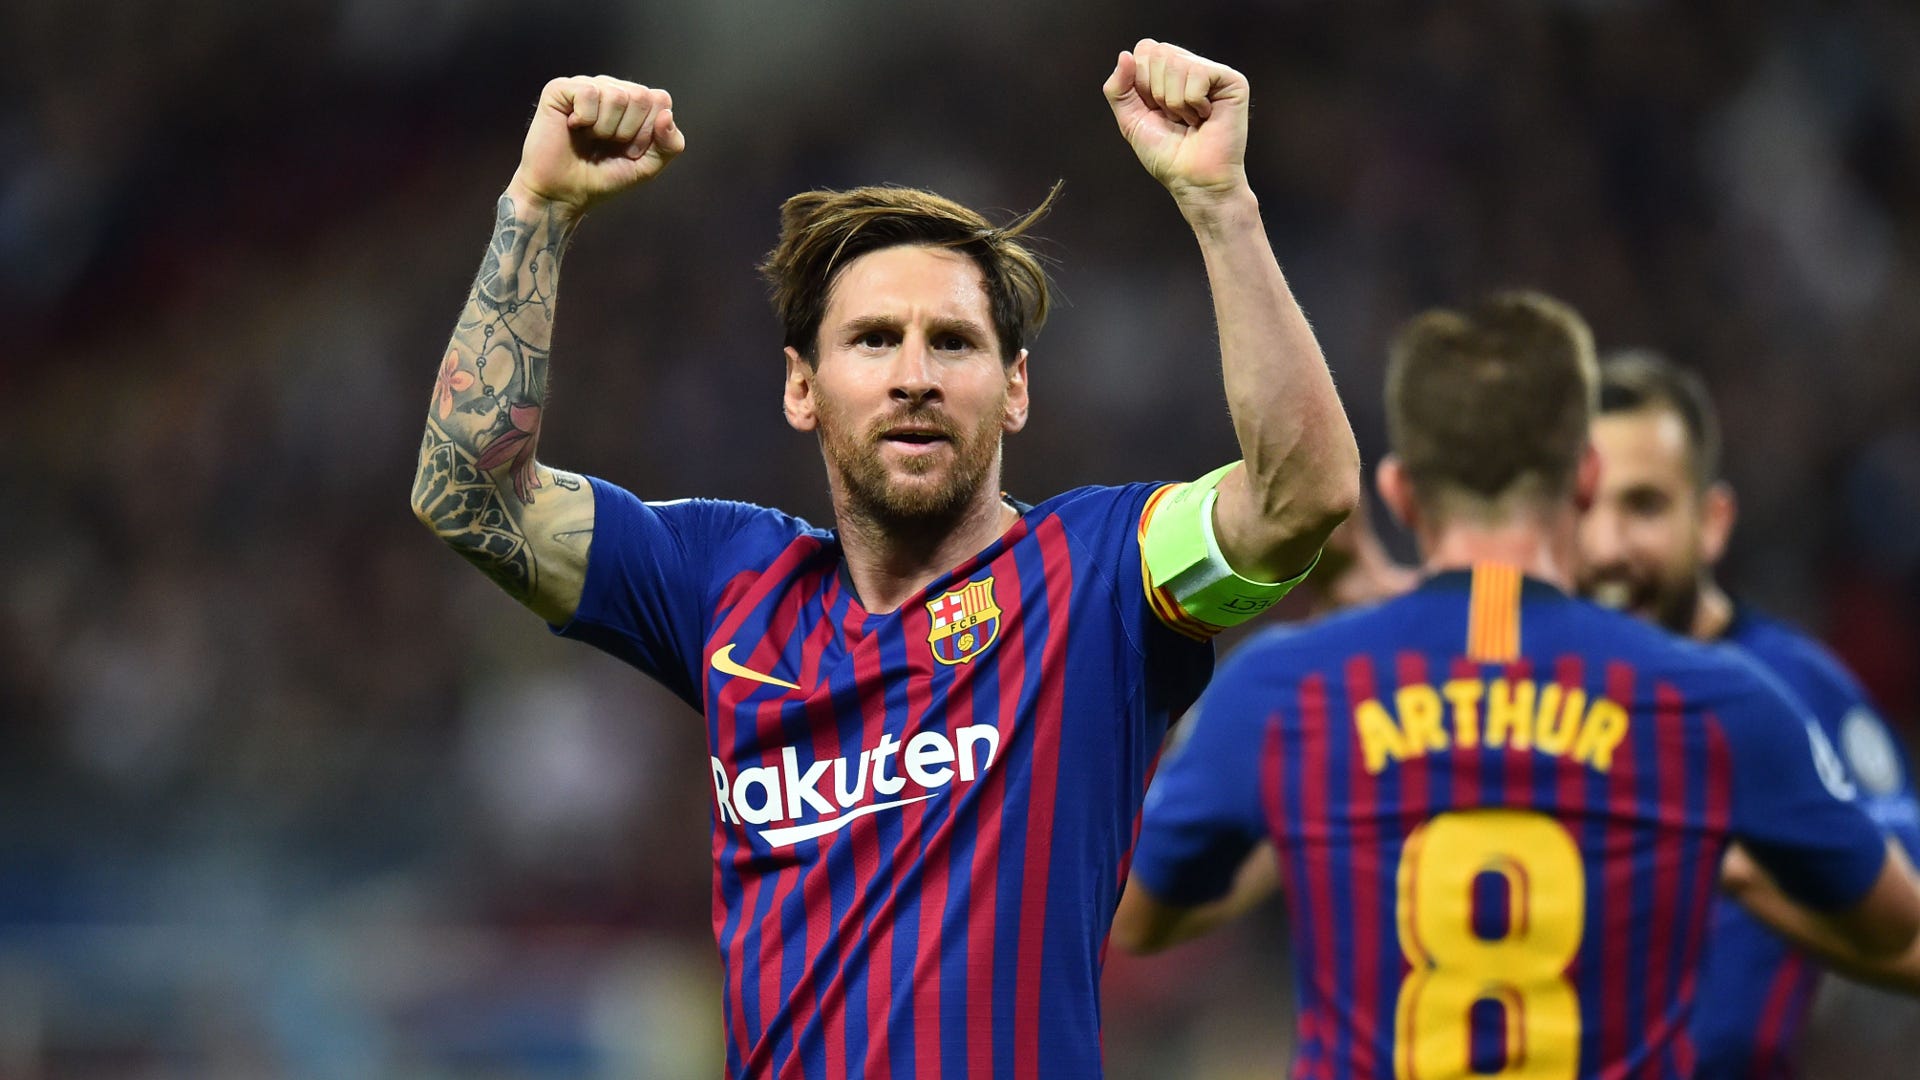 Tottenham Barca Messi, ba từ này đưa chúng ta đến một màn ra mắt đầy ấn tượng của Messi tại sân Wembley, khi anh ta đã thi đấu chói sáng và tạo ra sự khác biệt trong chiến thắng cho Barca.